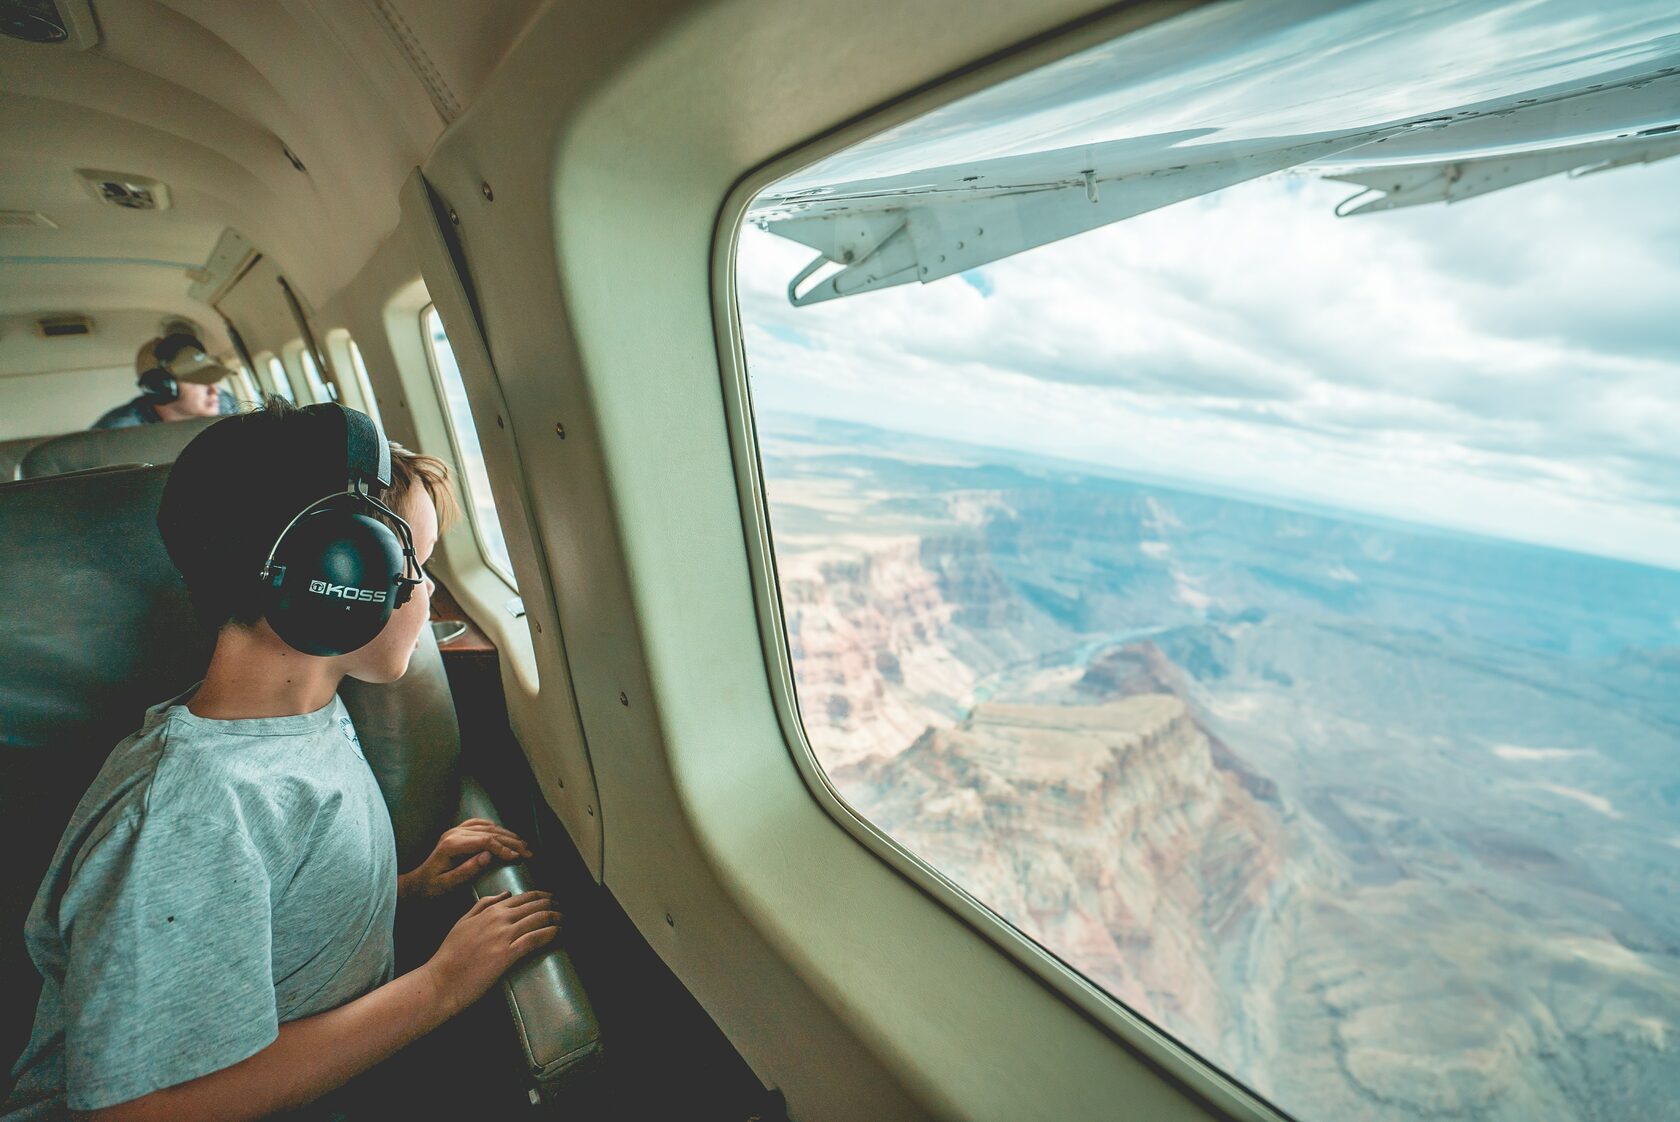 Фото перед полетом. Туризм самолет. Кабина пилота в полете с красивой панорамой море горы. Аэрофобия. Страх перед полетом на самолете.